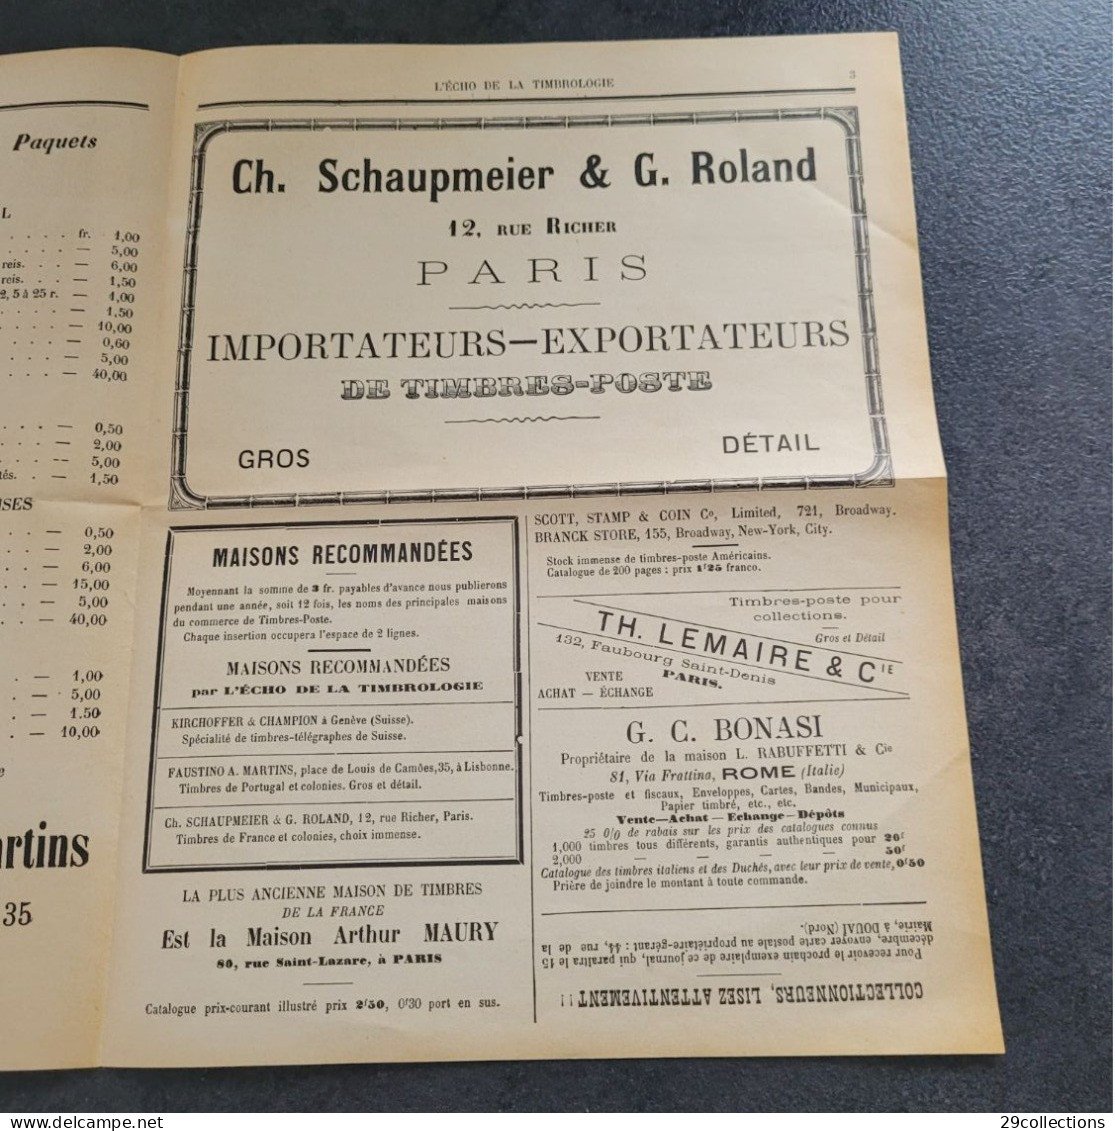 L'ECHO DE LA TIMBROLOGIE N°1 - 15/11/1887 - 1° mensuel français philatélique